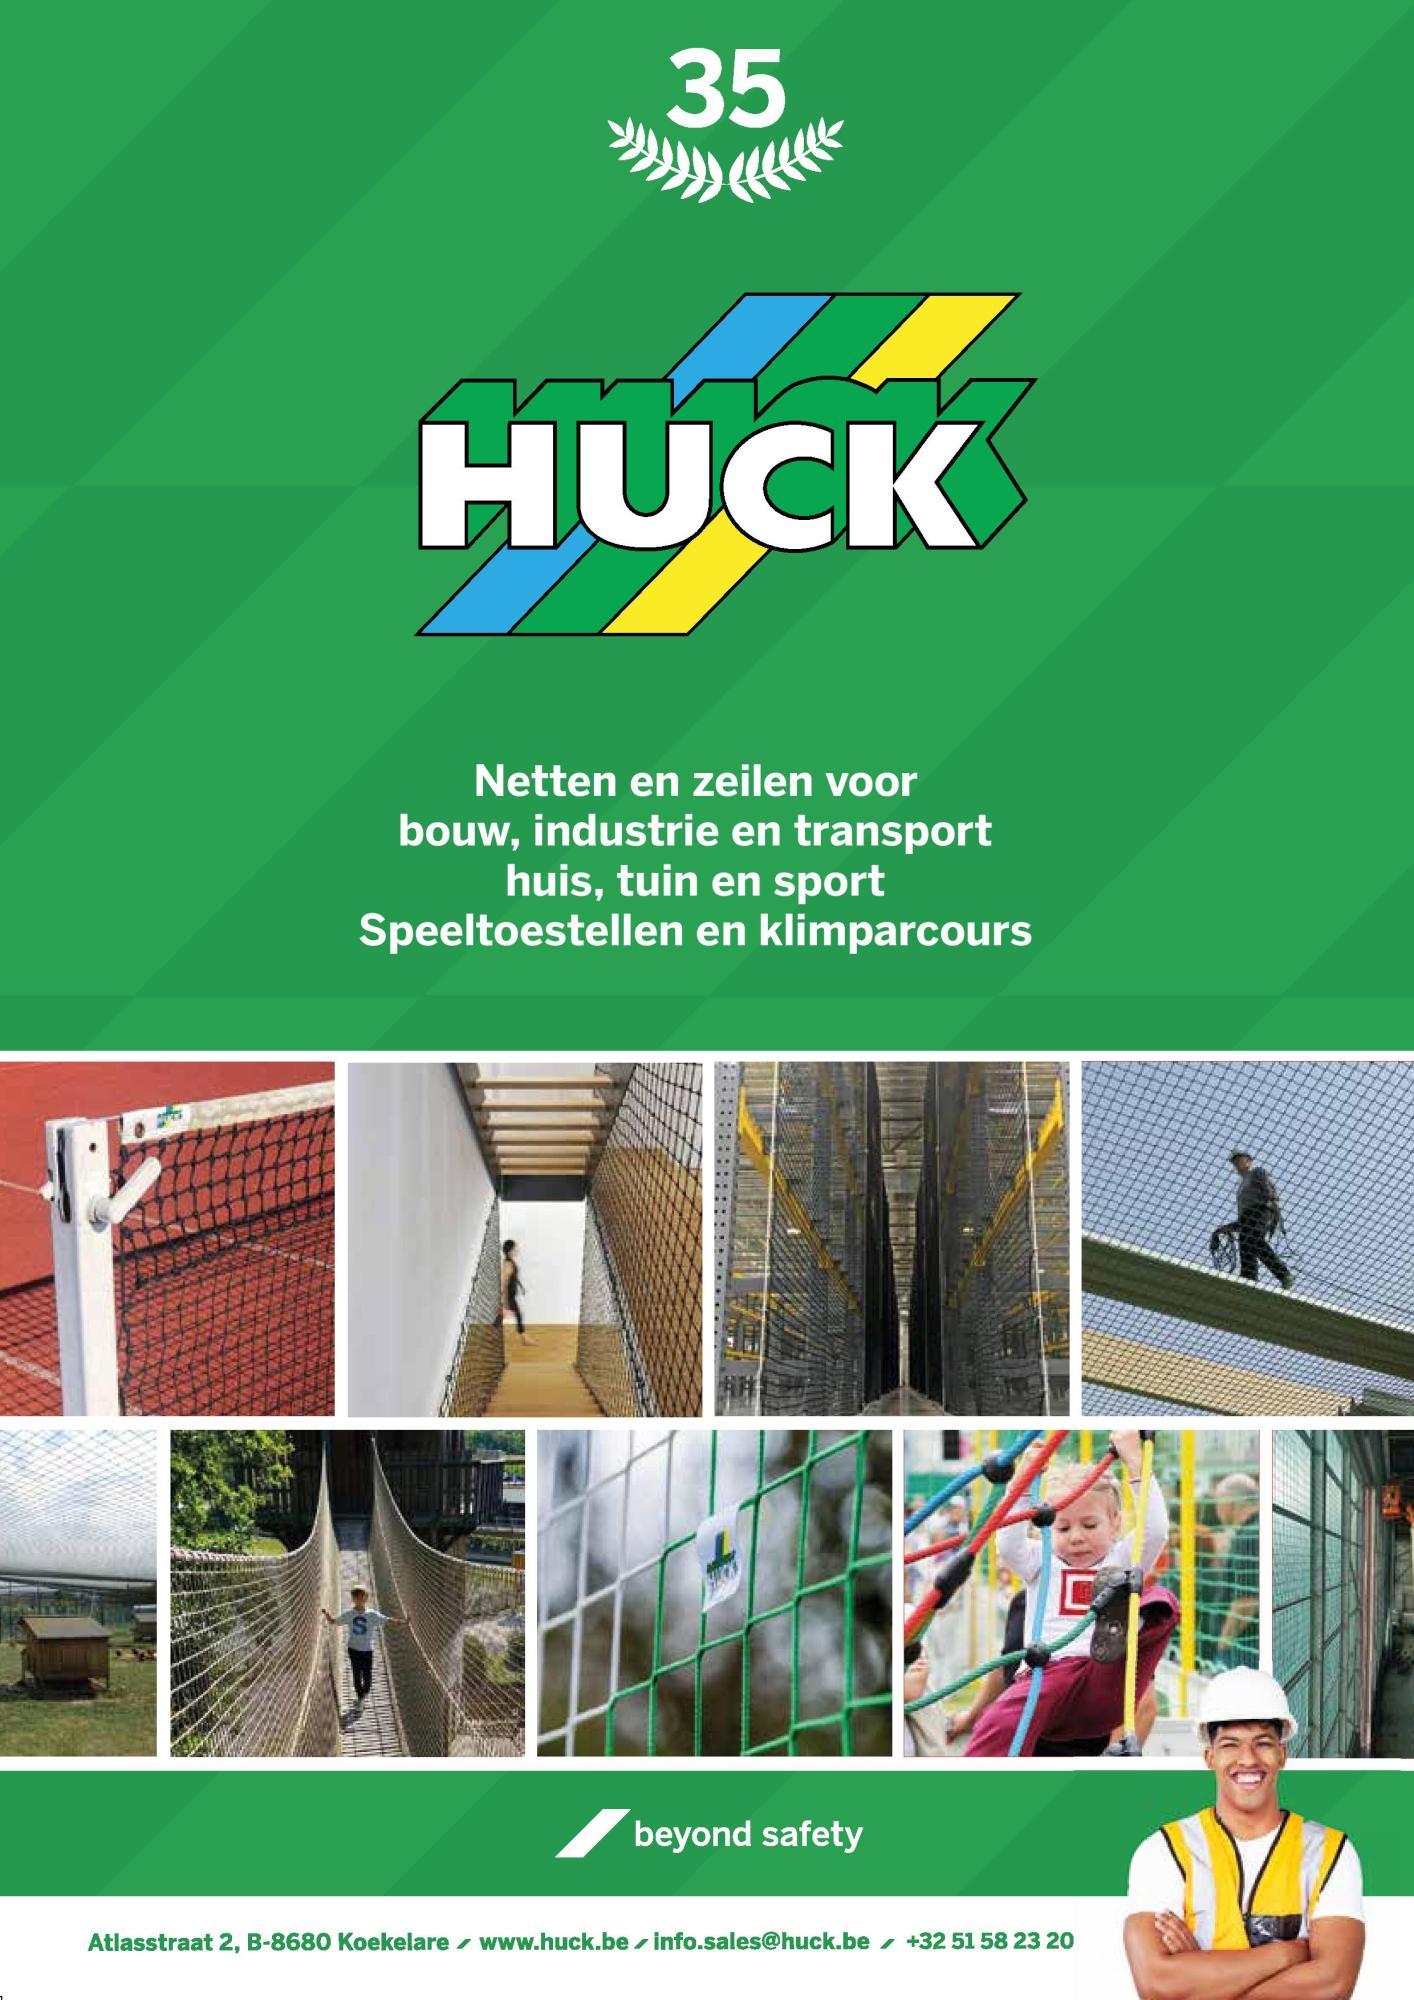 Huck Belgium